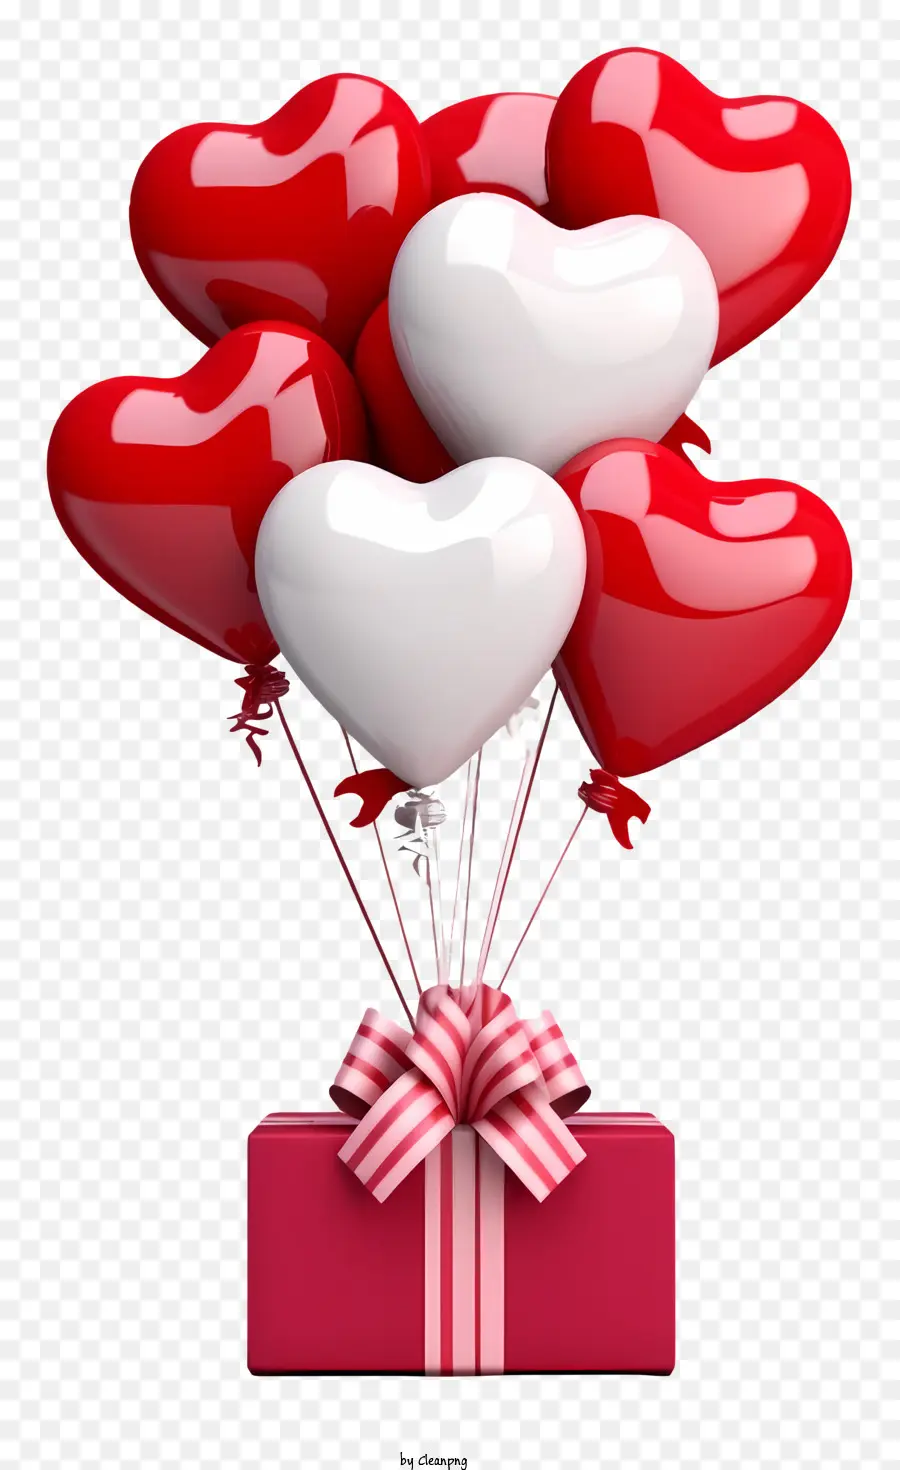 Realistische 3D Valentine Geschenkballon Ballon Arrangement Herzförmige Box Pink Box mit rot-weißen Bogenballons - Rot-weiße Ballonanordnung mit herzförmiger Kiste